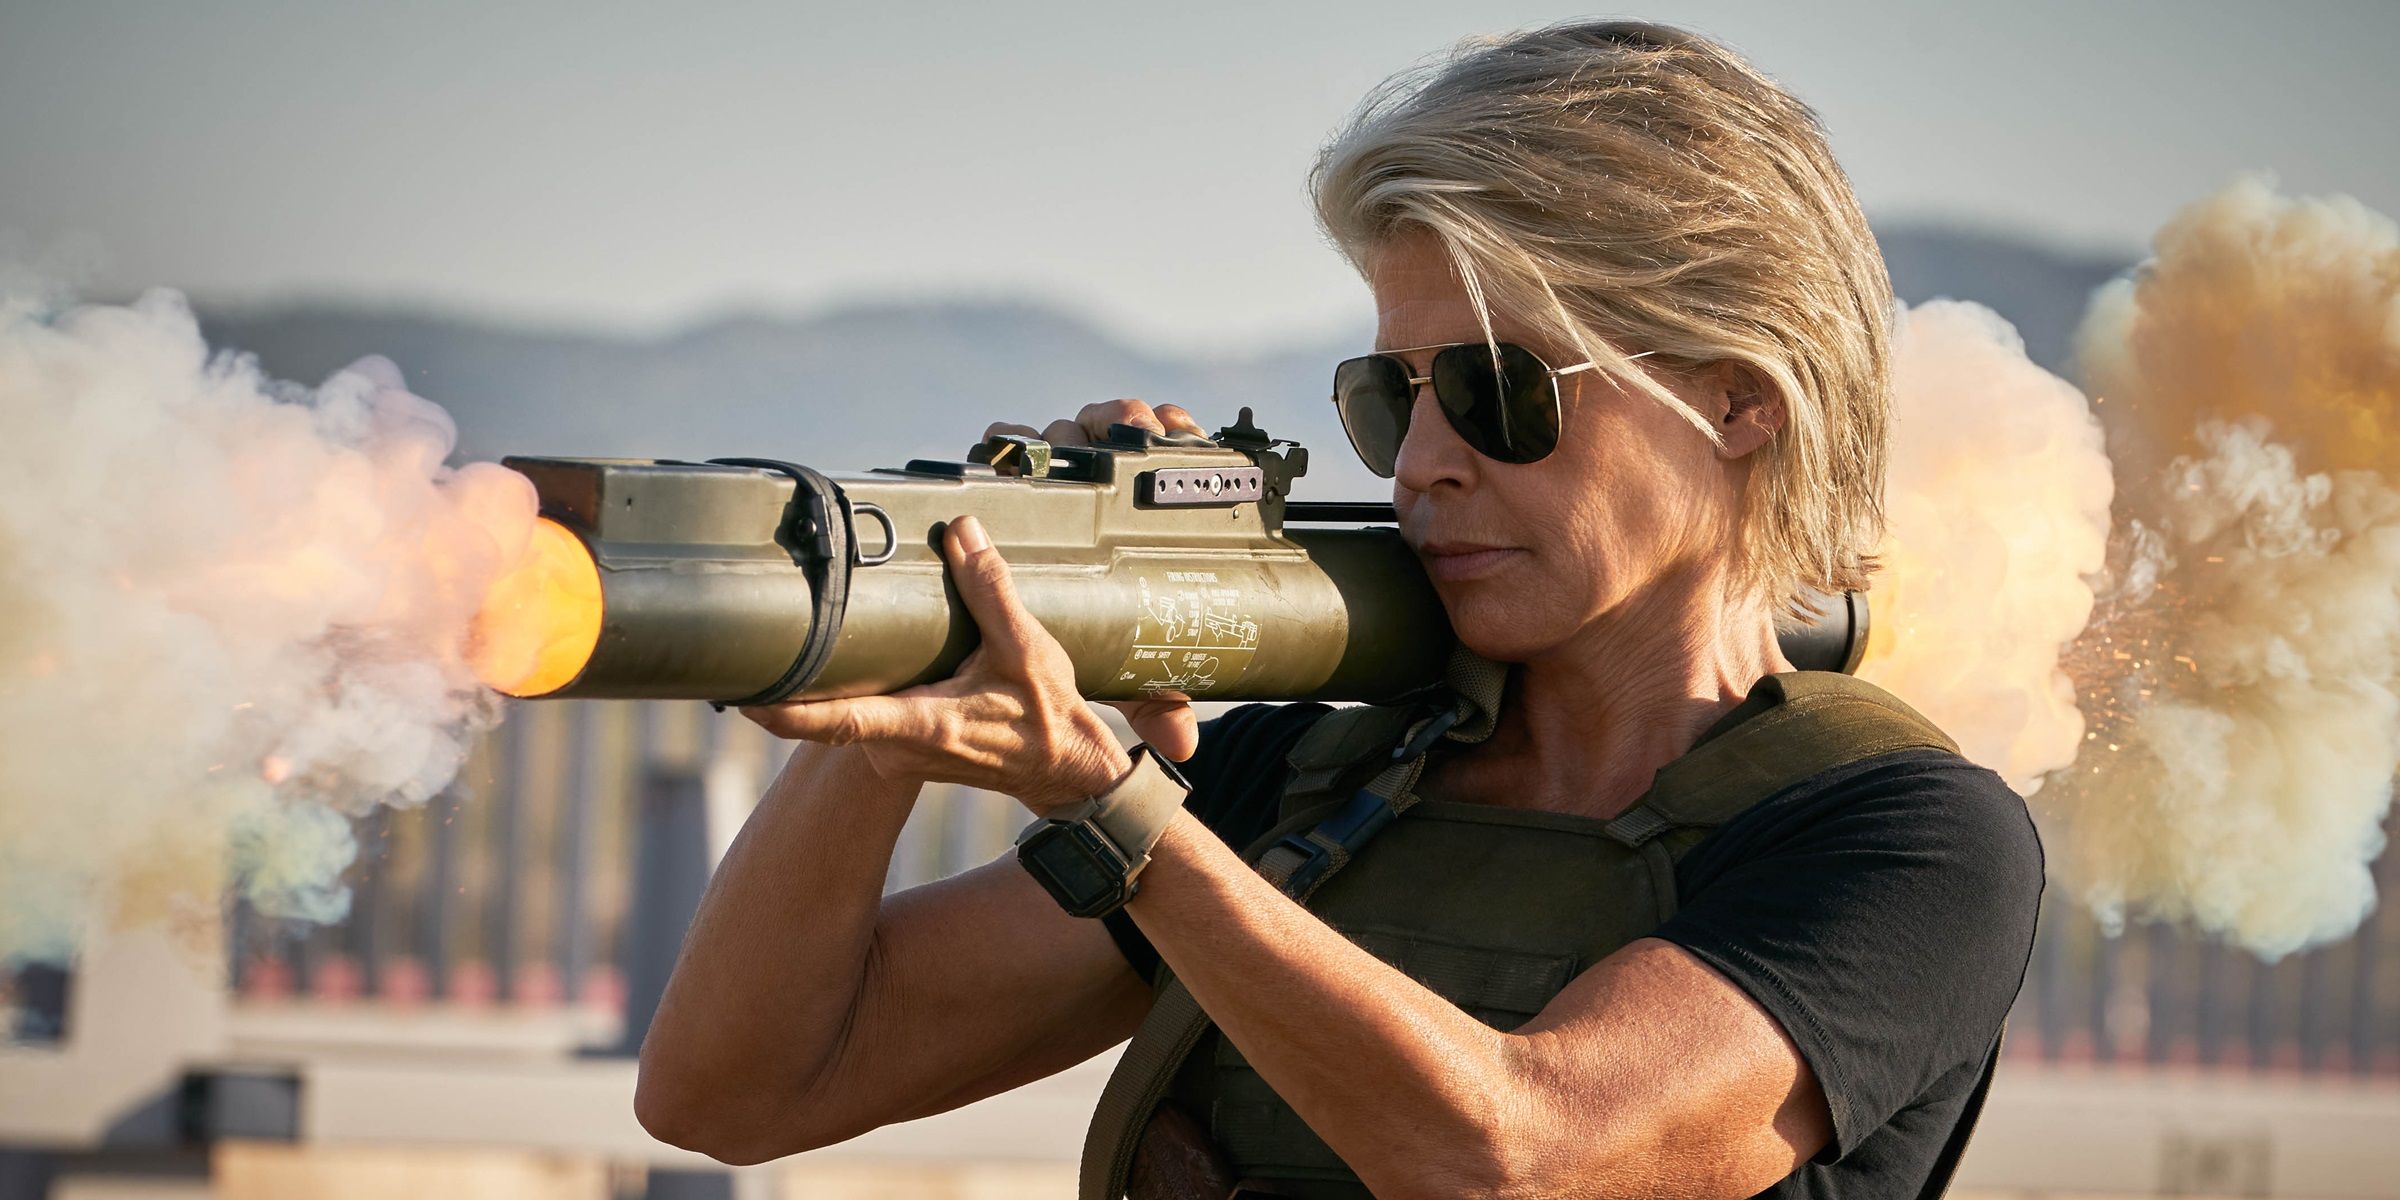 Linda Hamilton fires a bazooka in Terminator: Dark Fate.